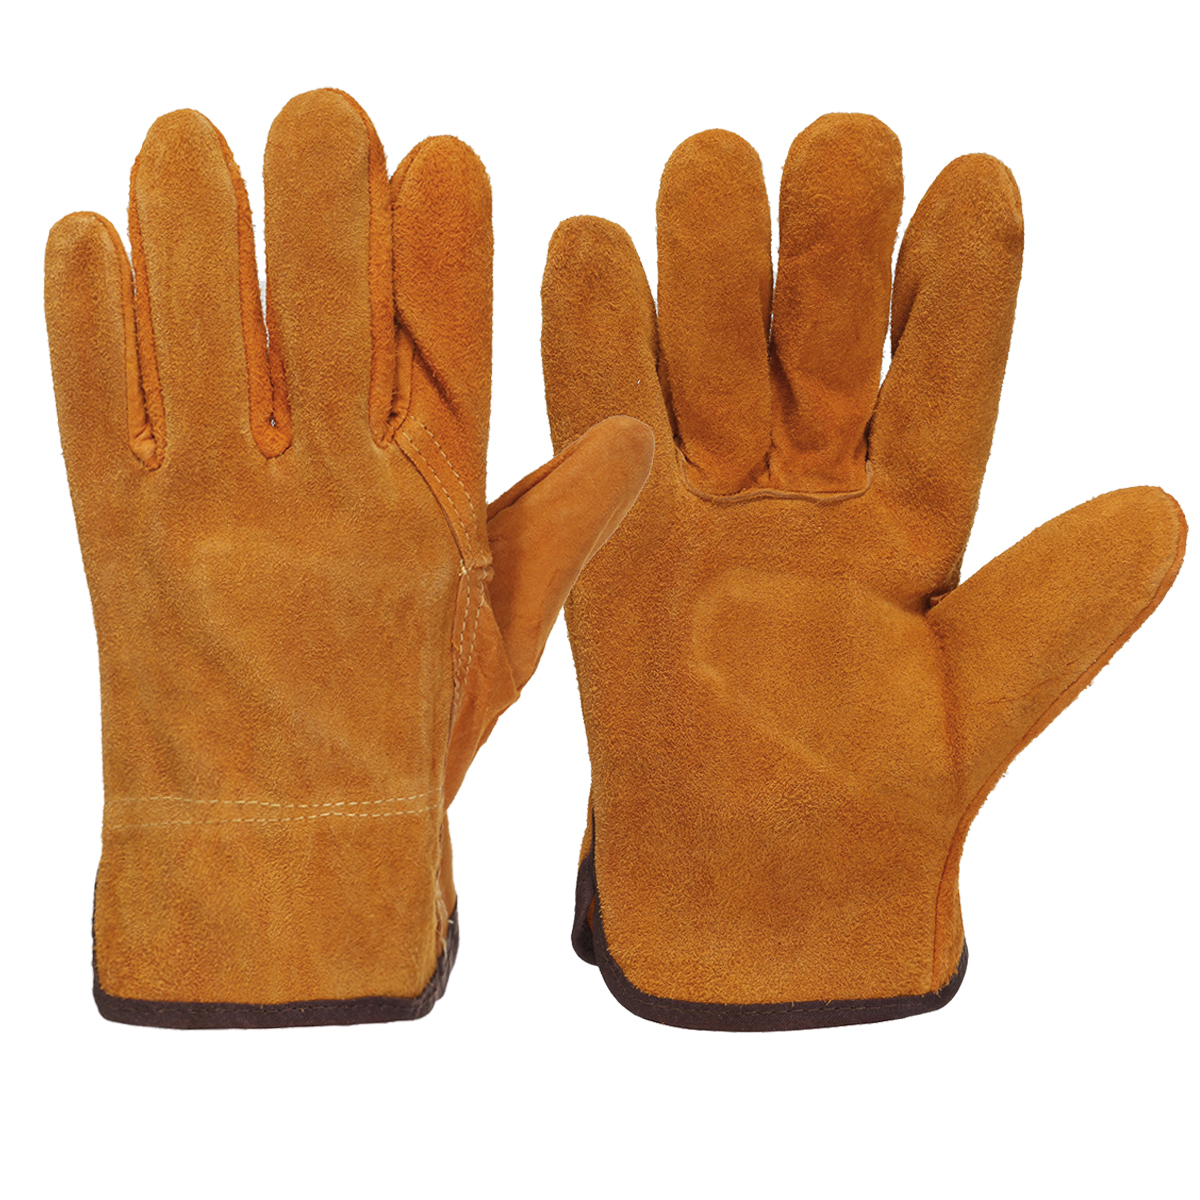 Garden-Gardening-Welder-Gloves-Men-Women-Thorn-Proof-Leather-Work-Gloves-Yellow-1630104-4